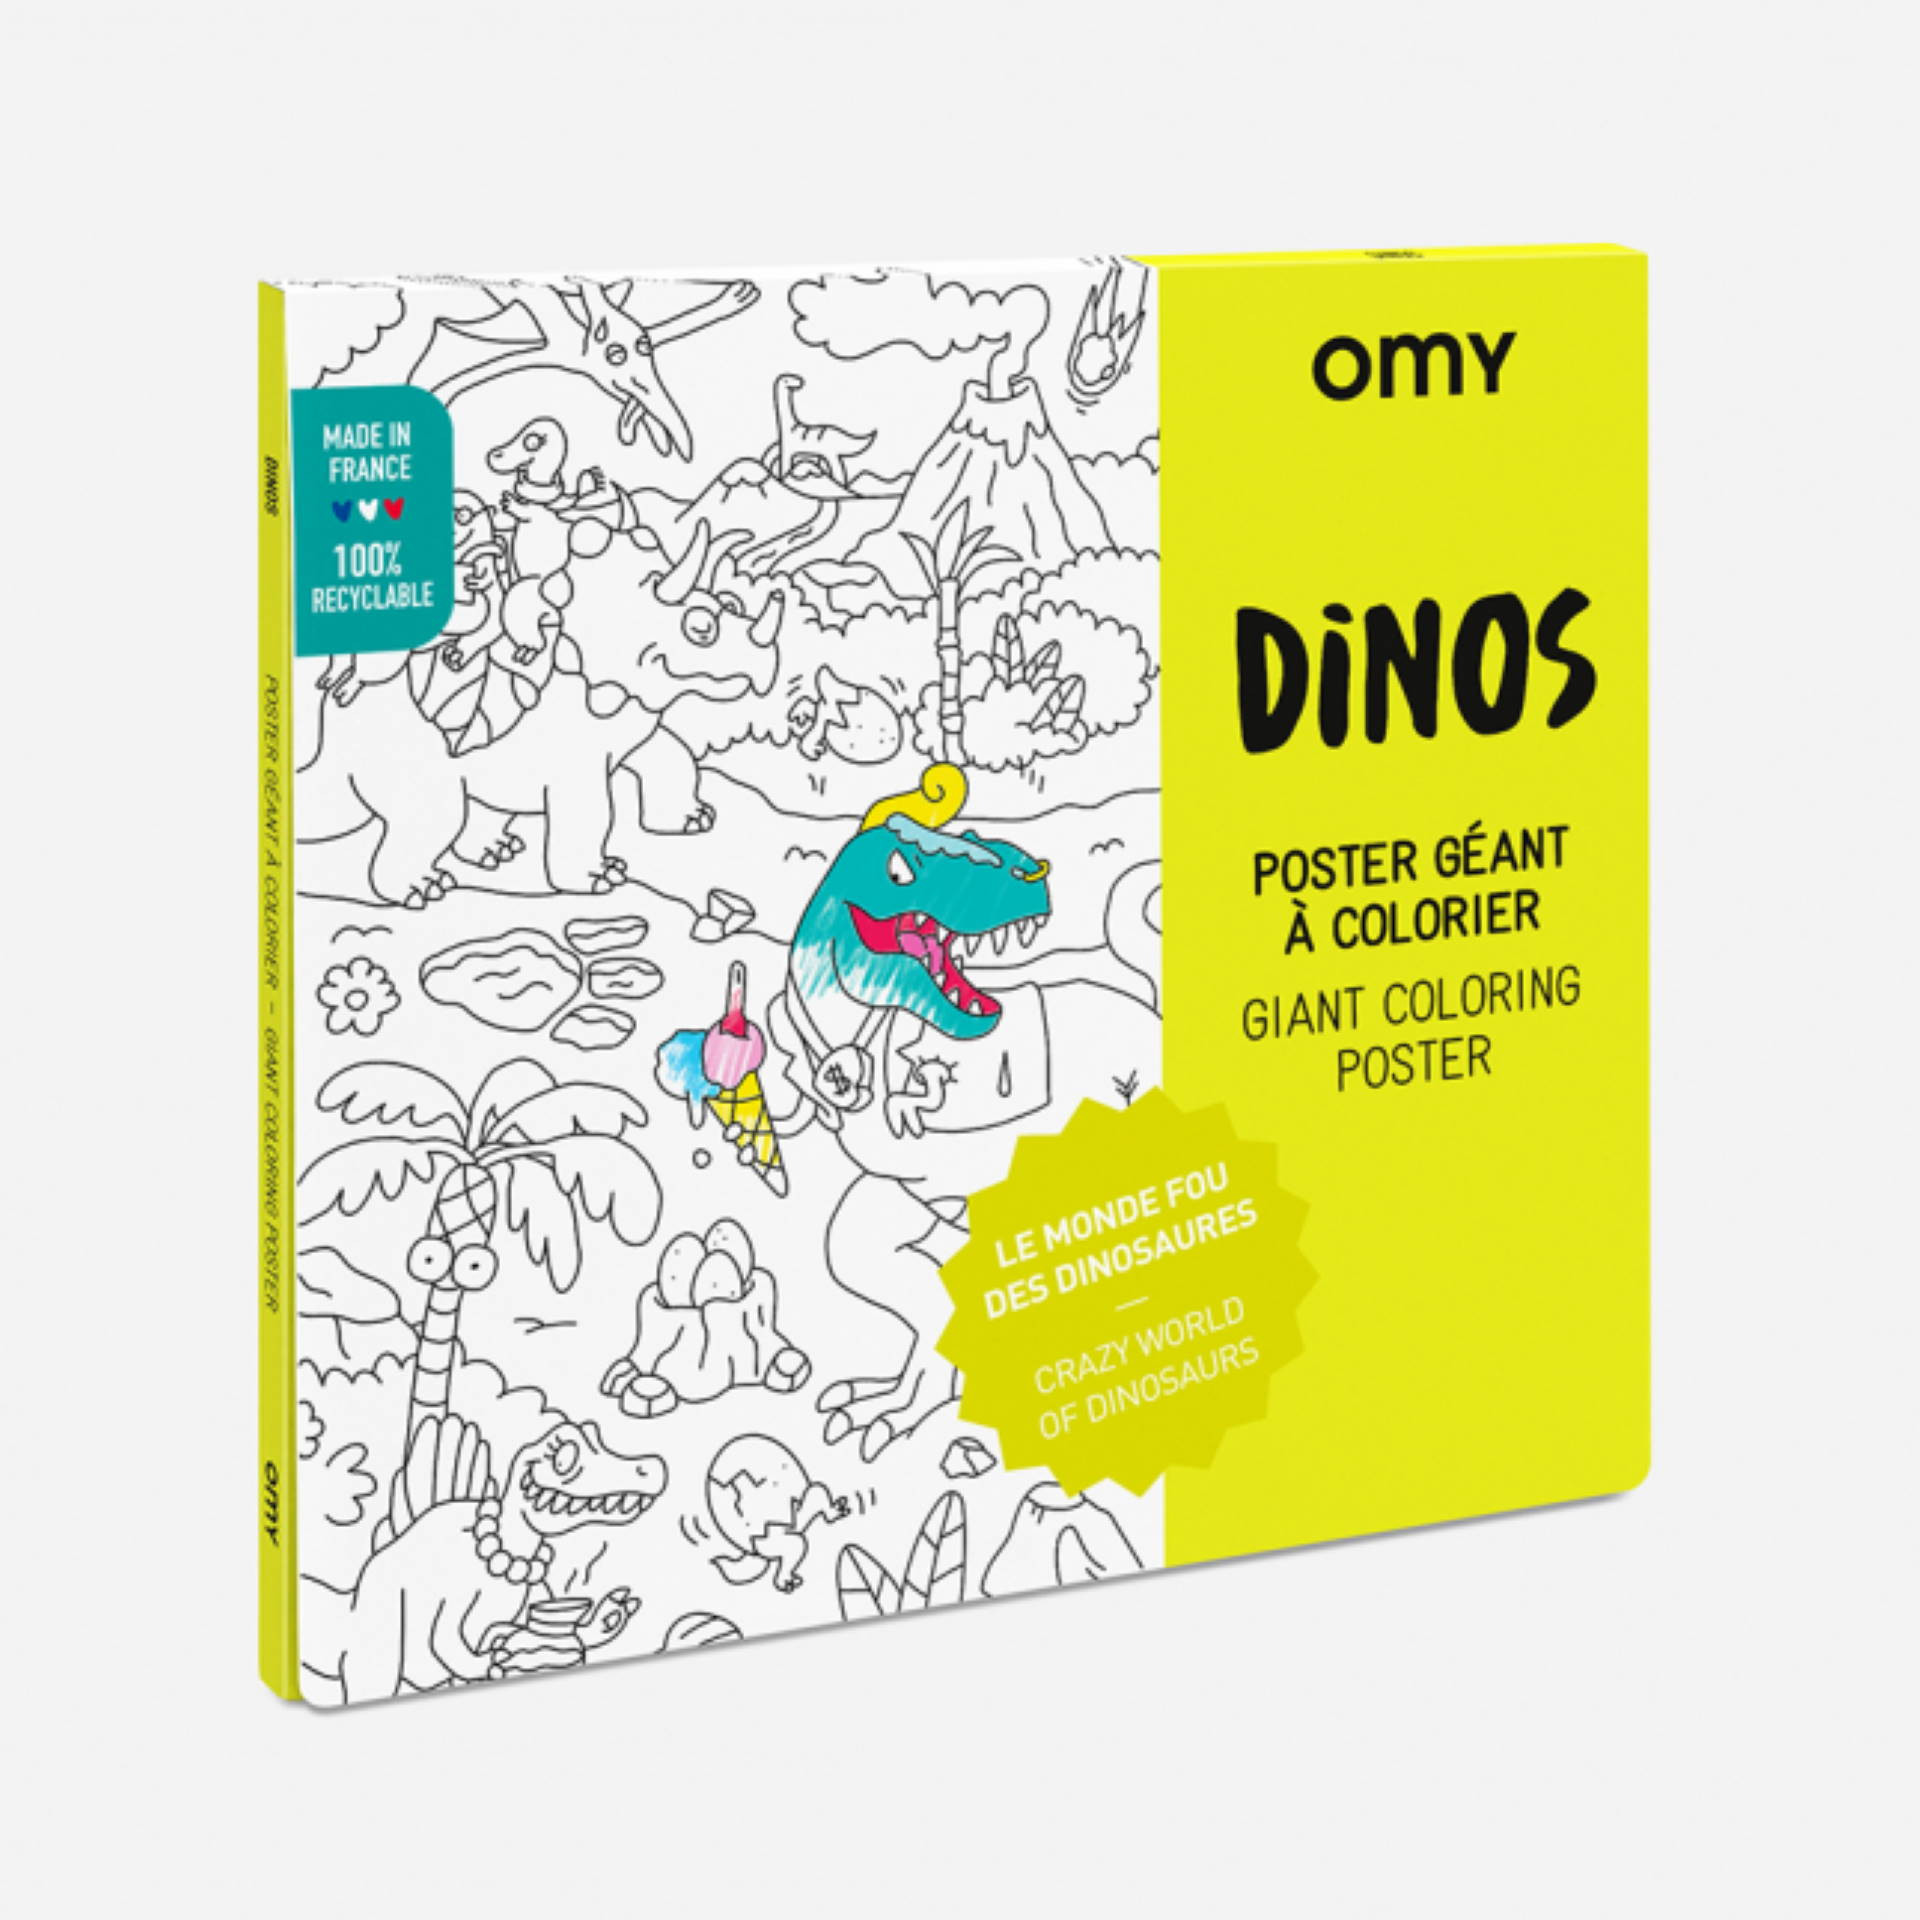 Poster géant à colorier Dinosaure – OMY